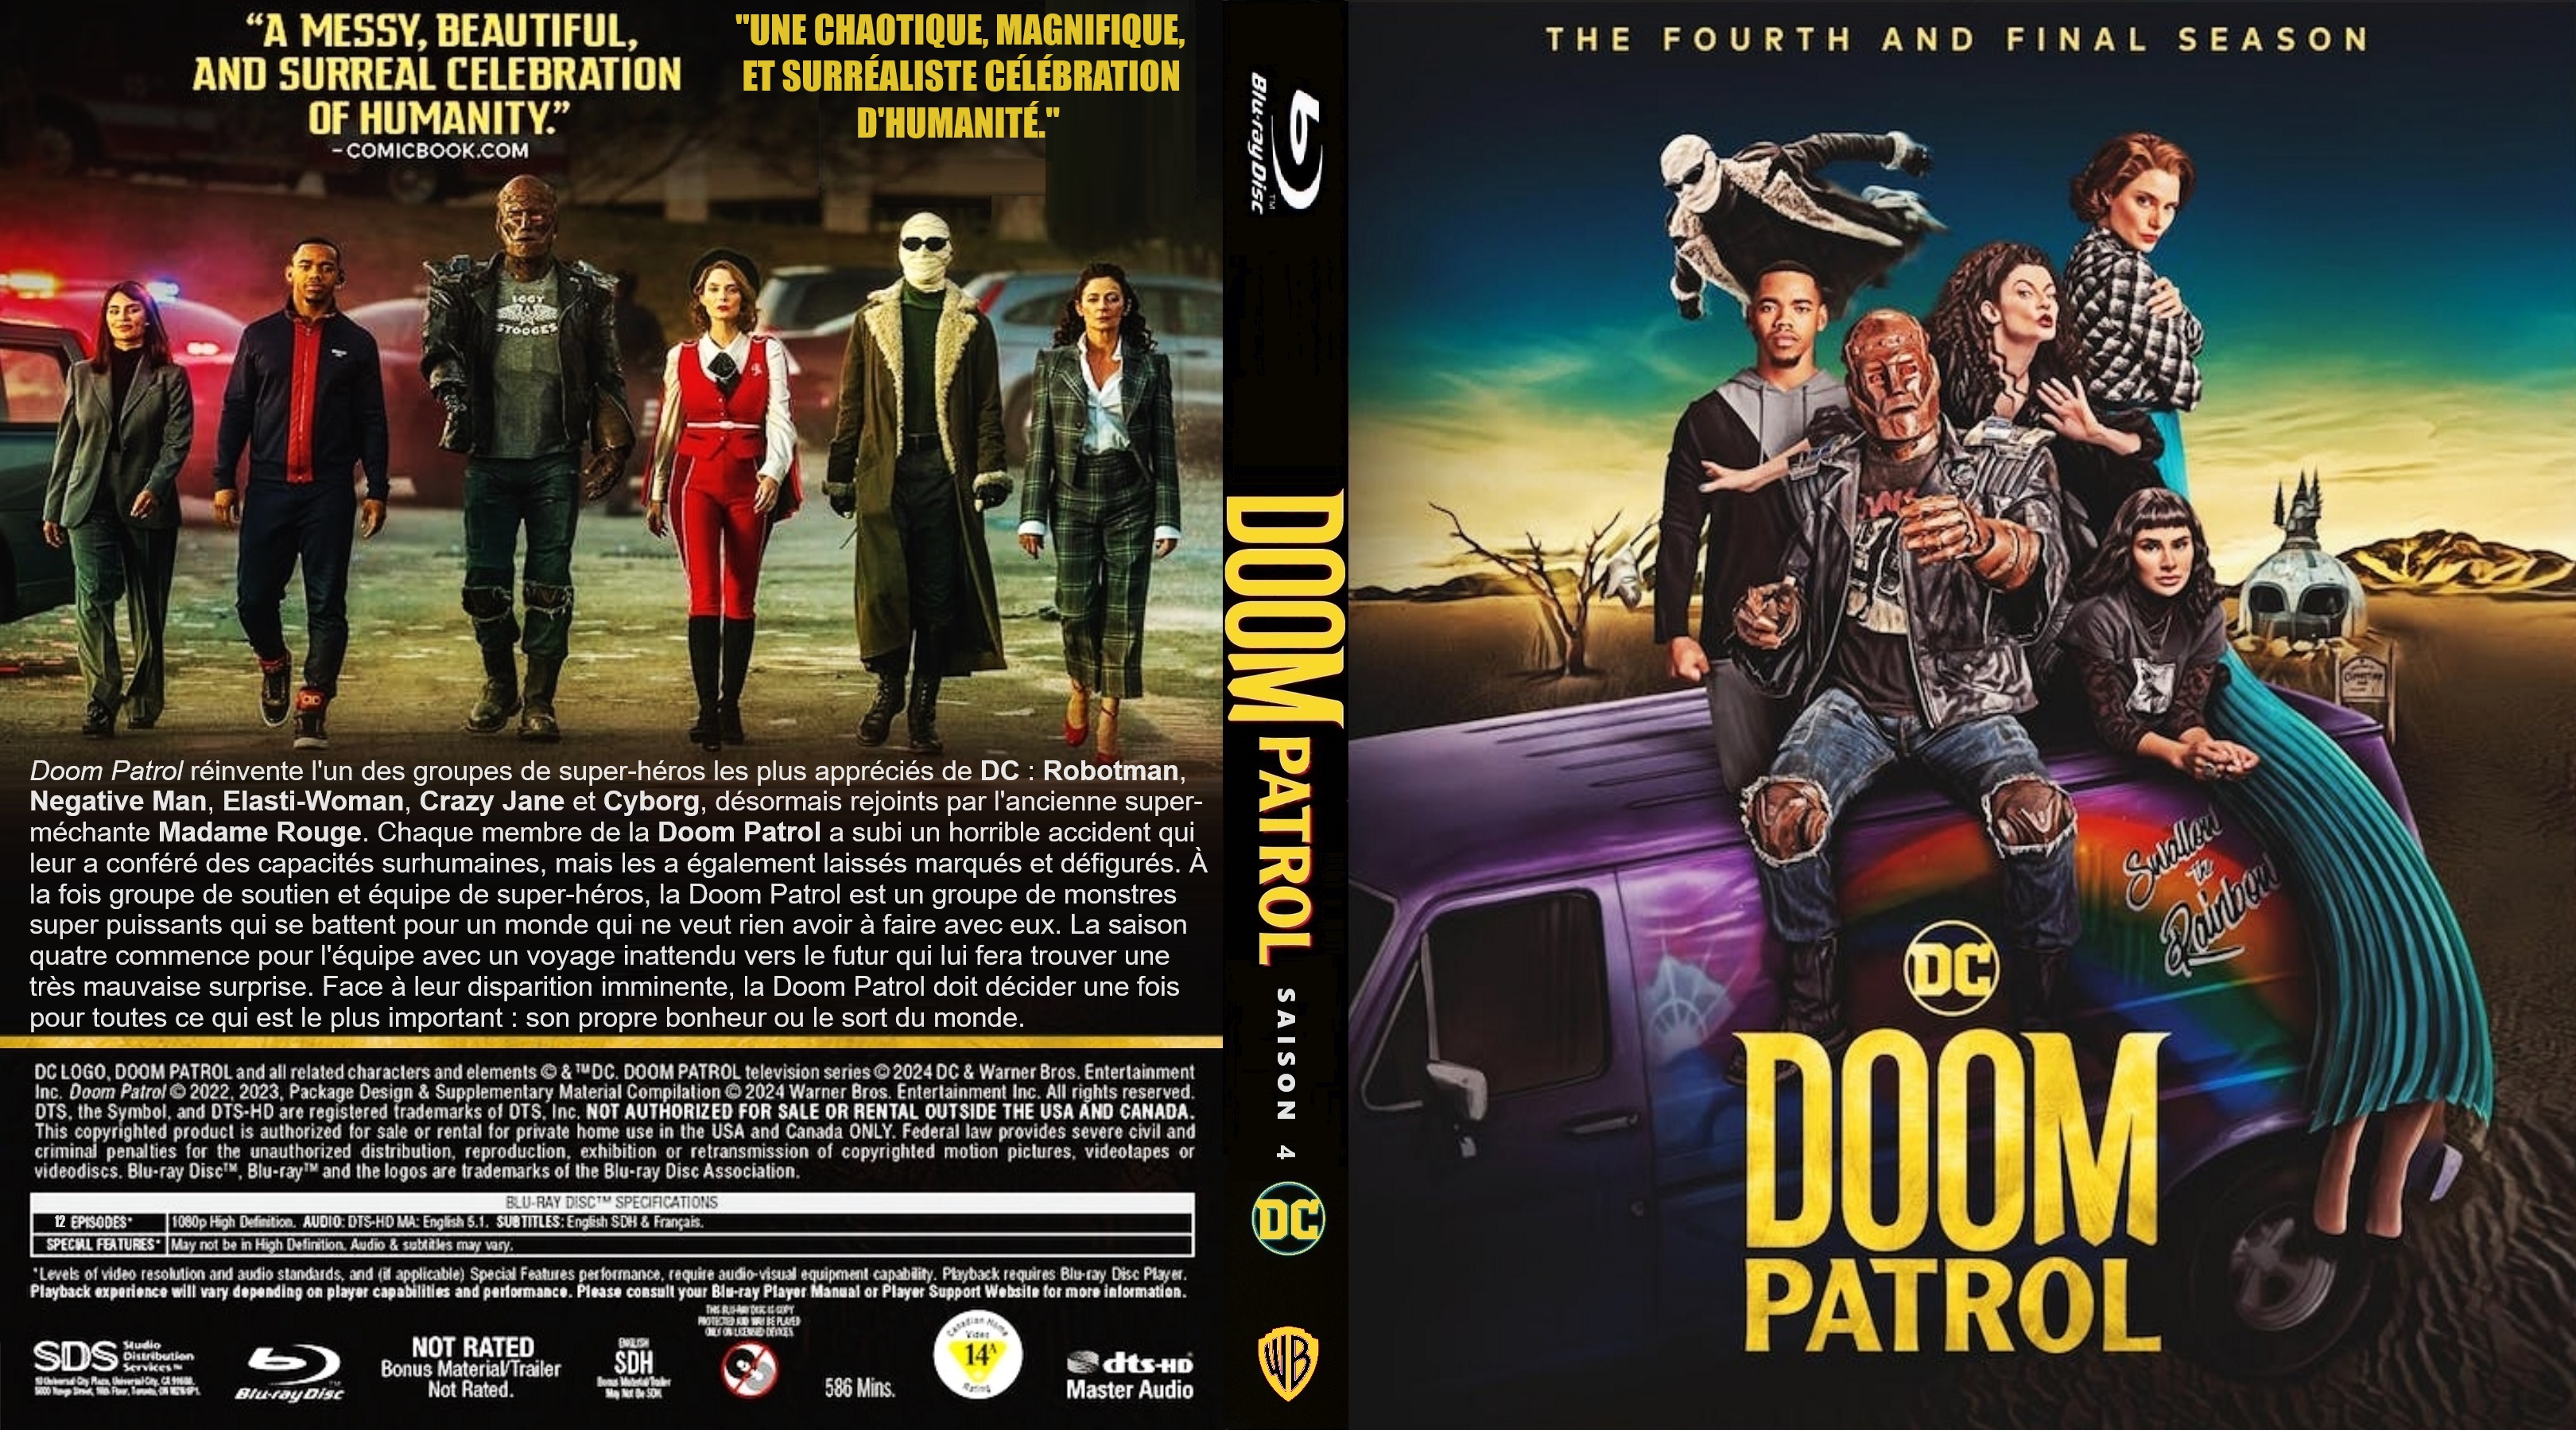 Jaquette Dvd De Doom Patrol Saison 4 Custom Blu Ray V2 Cinéma Passion